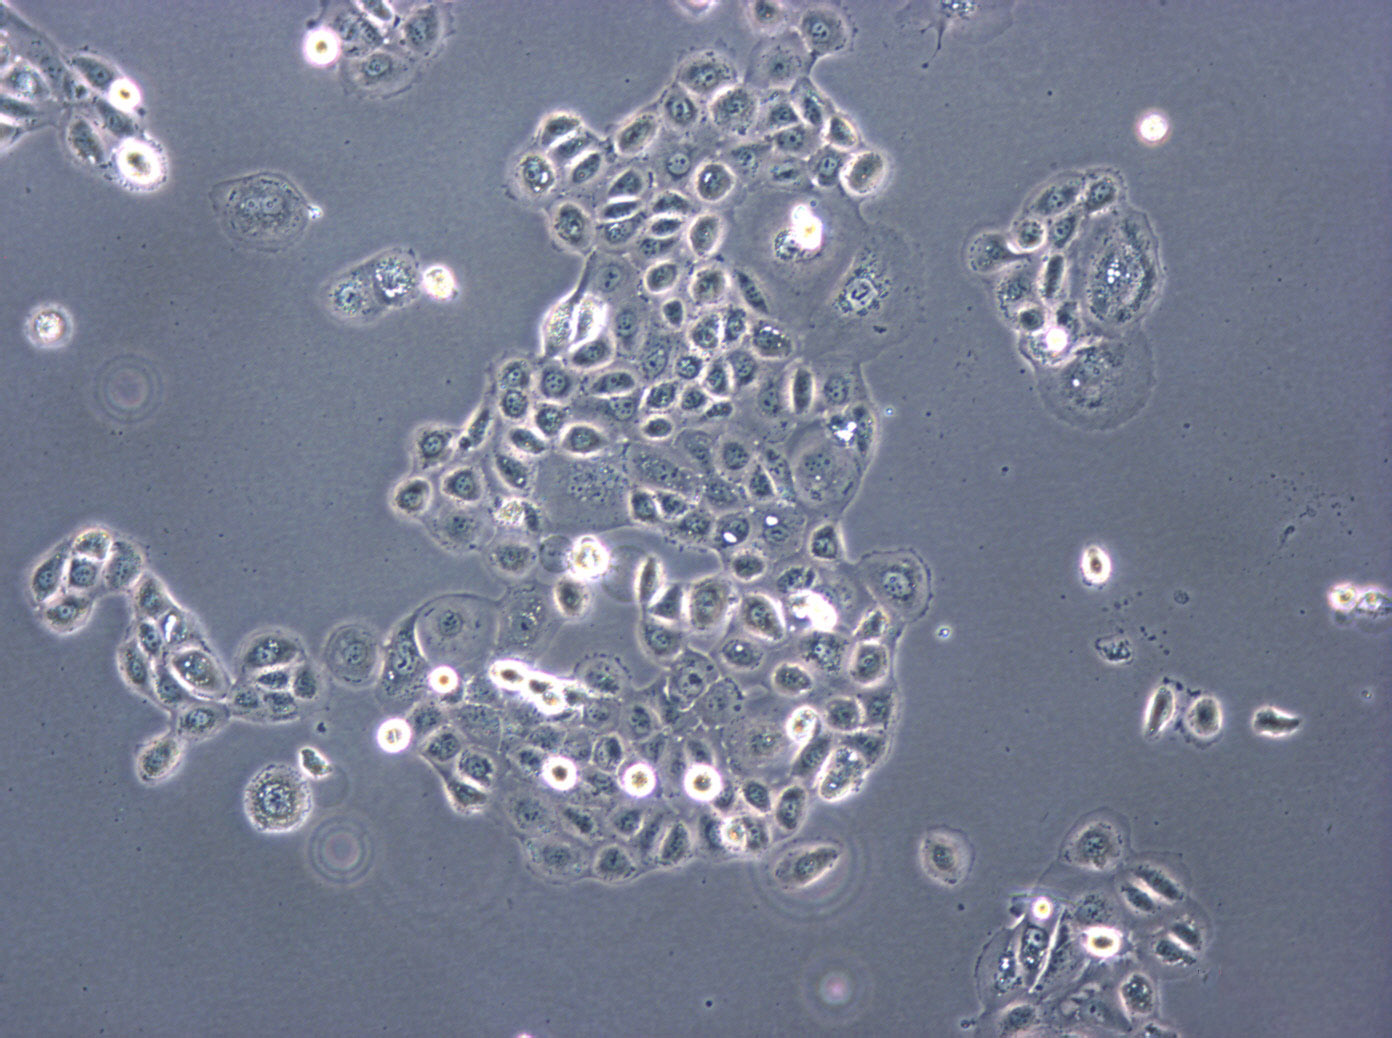 SNU-398 Cells|人肝癌需消化细胞系,SNU-398 Cells